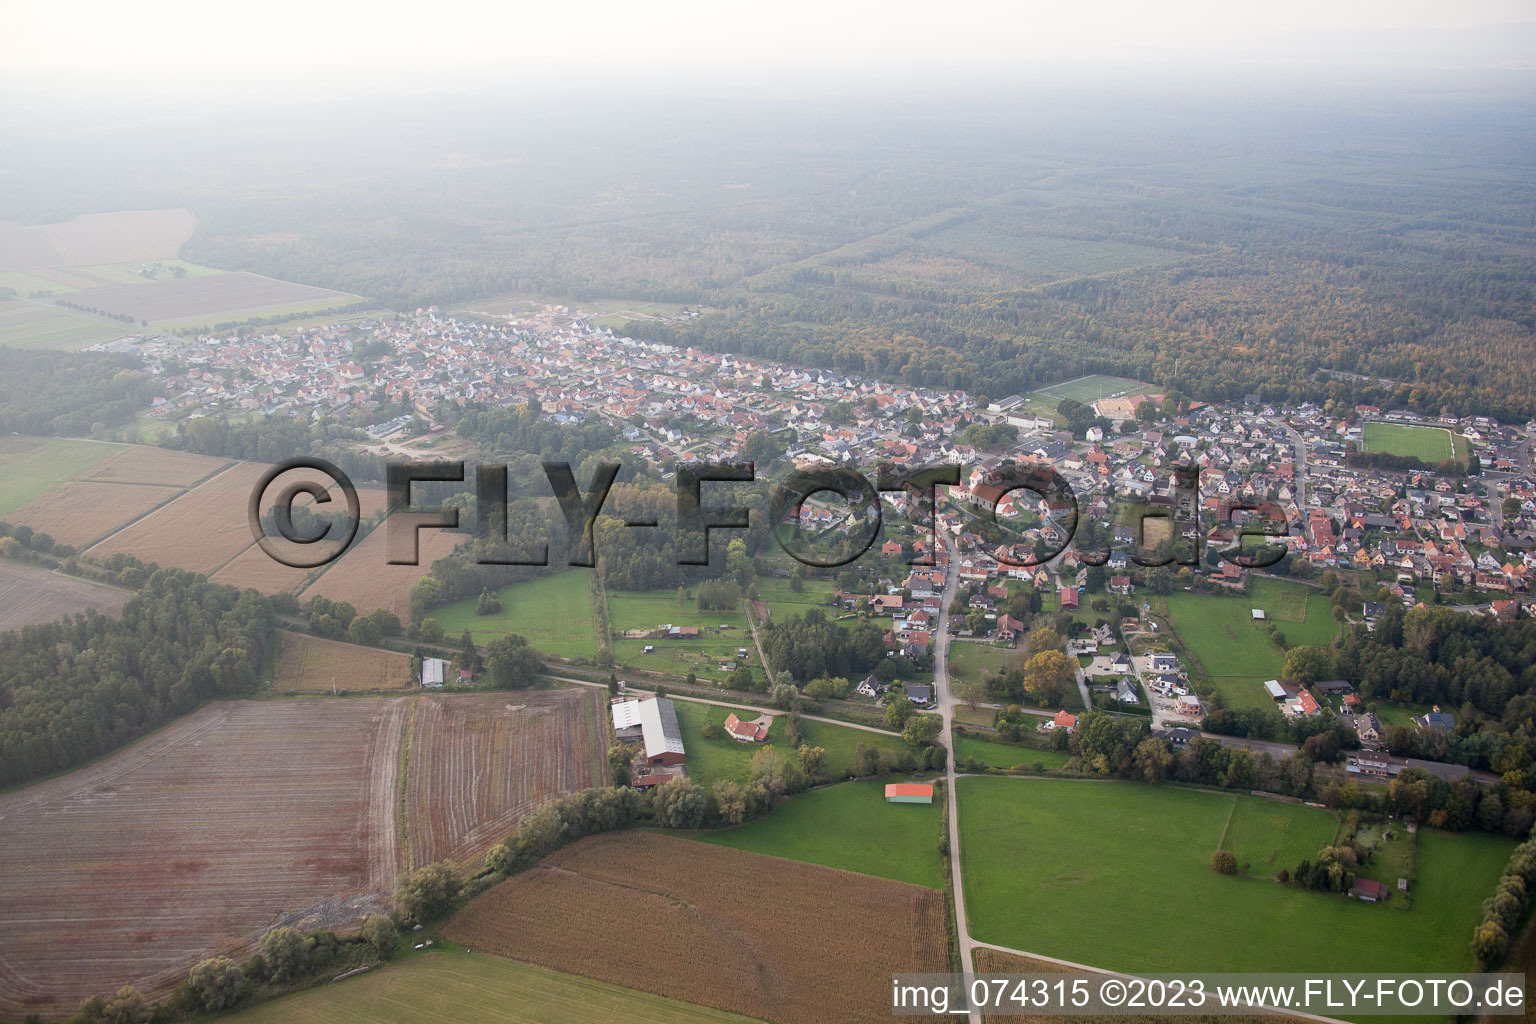 Schirrhein in the state Bas-Rhin, France from above